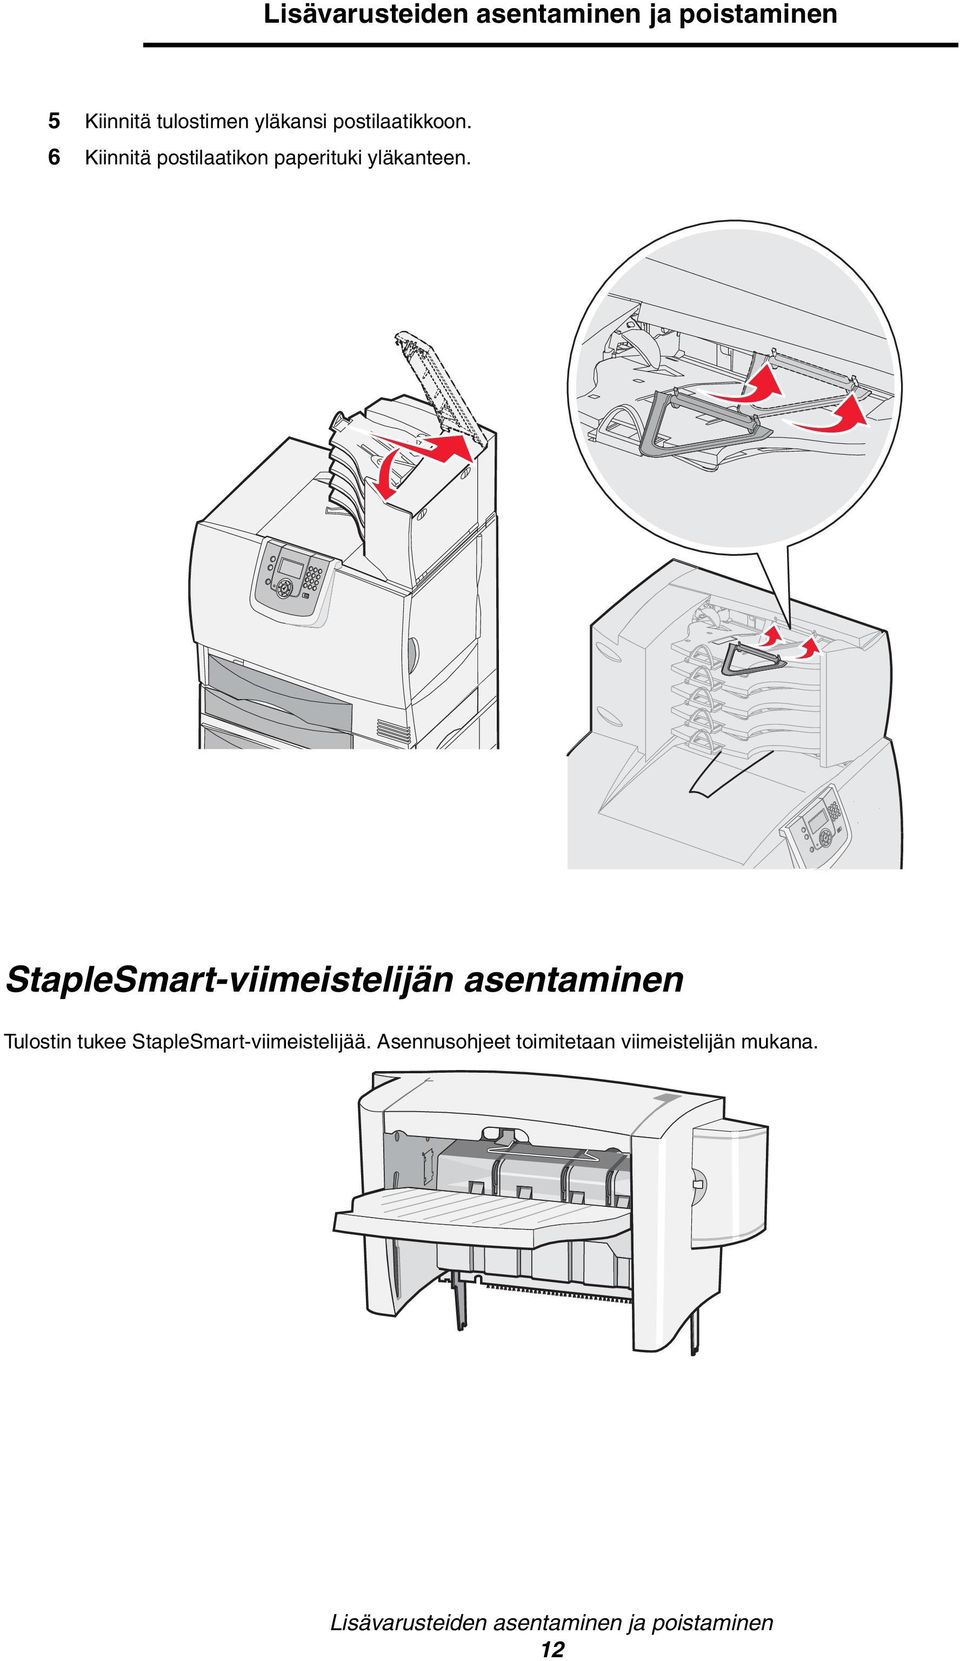 StapleSmart-viimeistelijän asentaminen Tulostin tukee